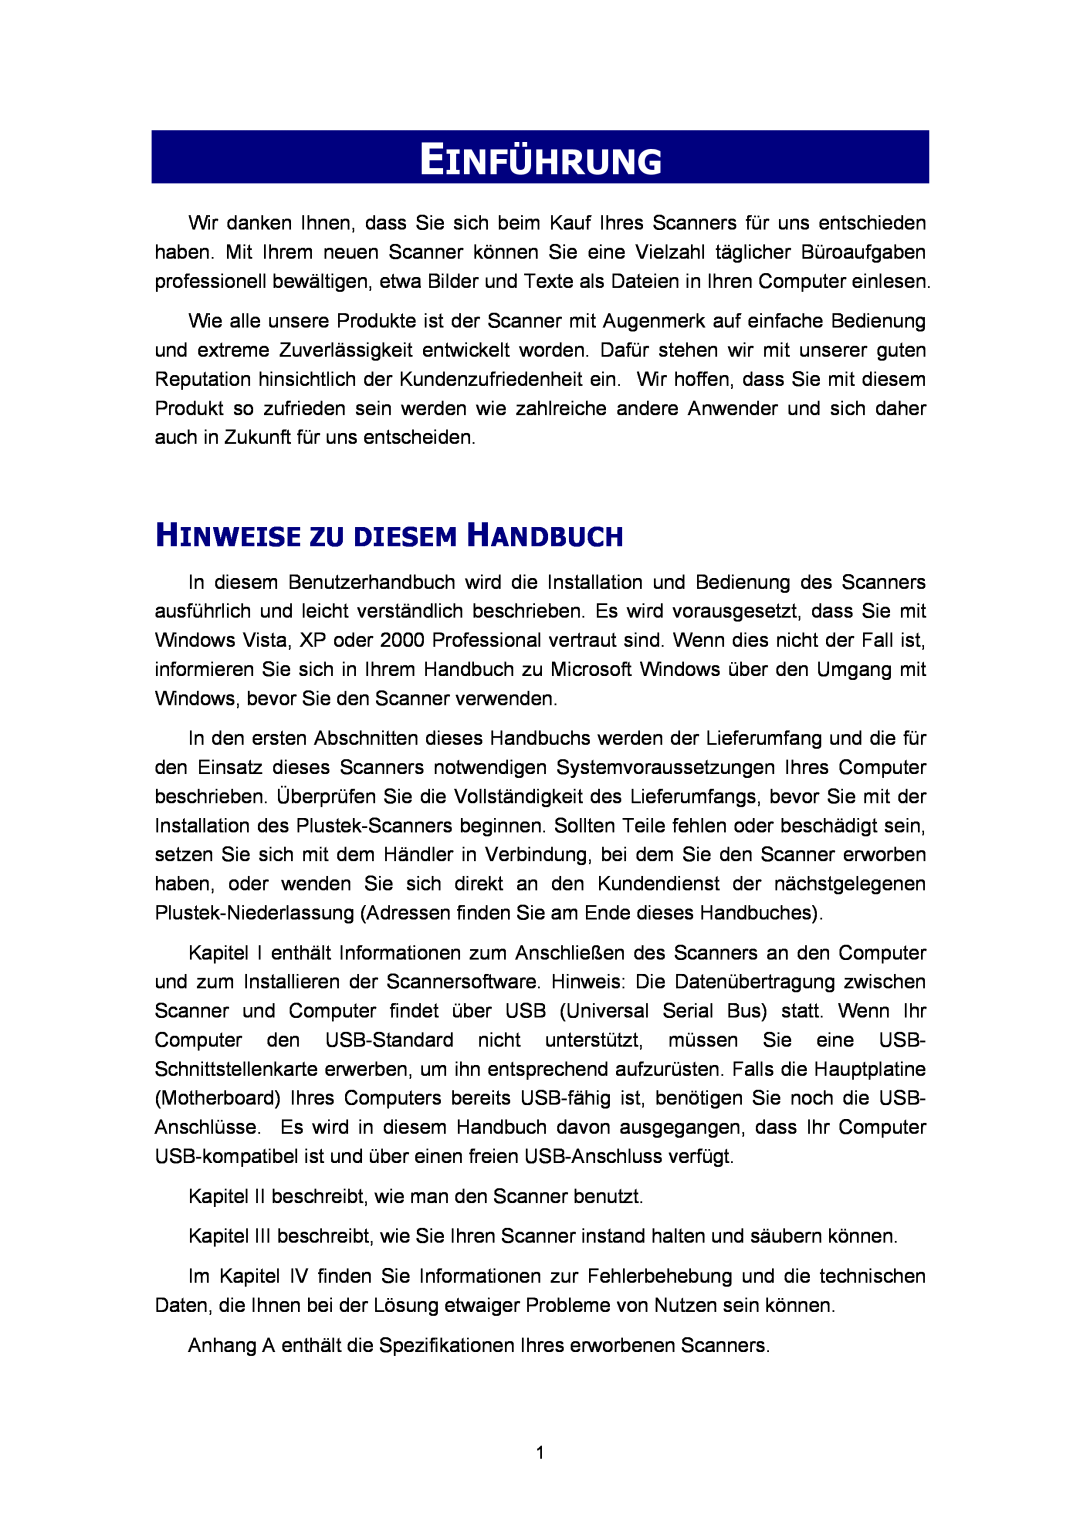 Plustek Scanner-Benutzerhandbuch, A360 manual Einführung, Hinweise Zu Diesem Handbuch 